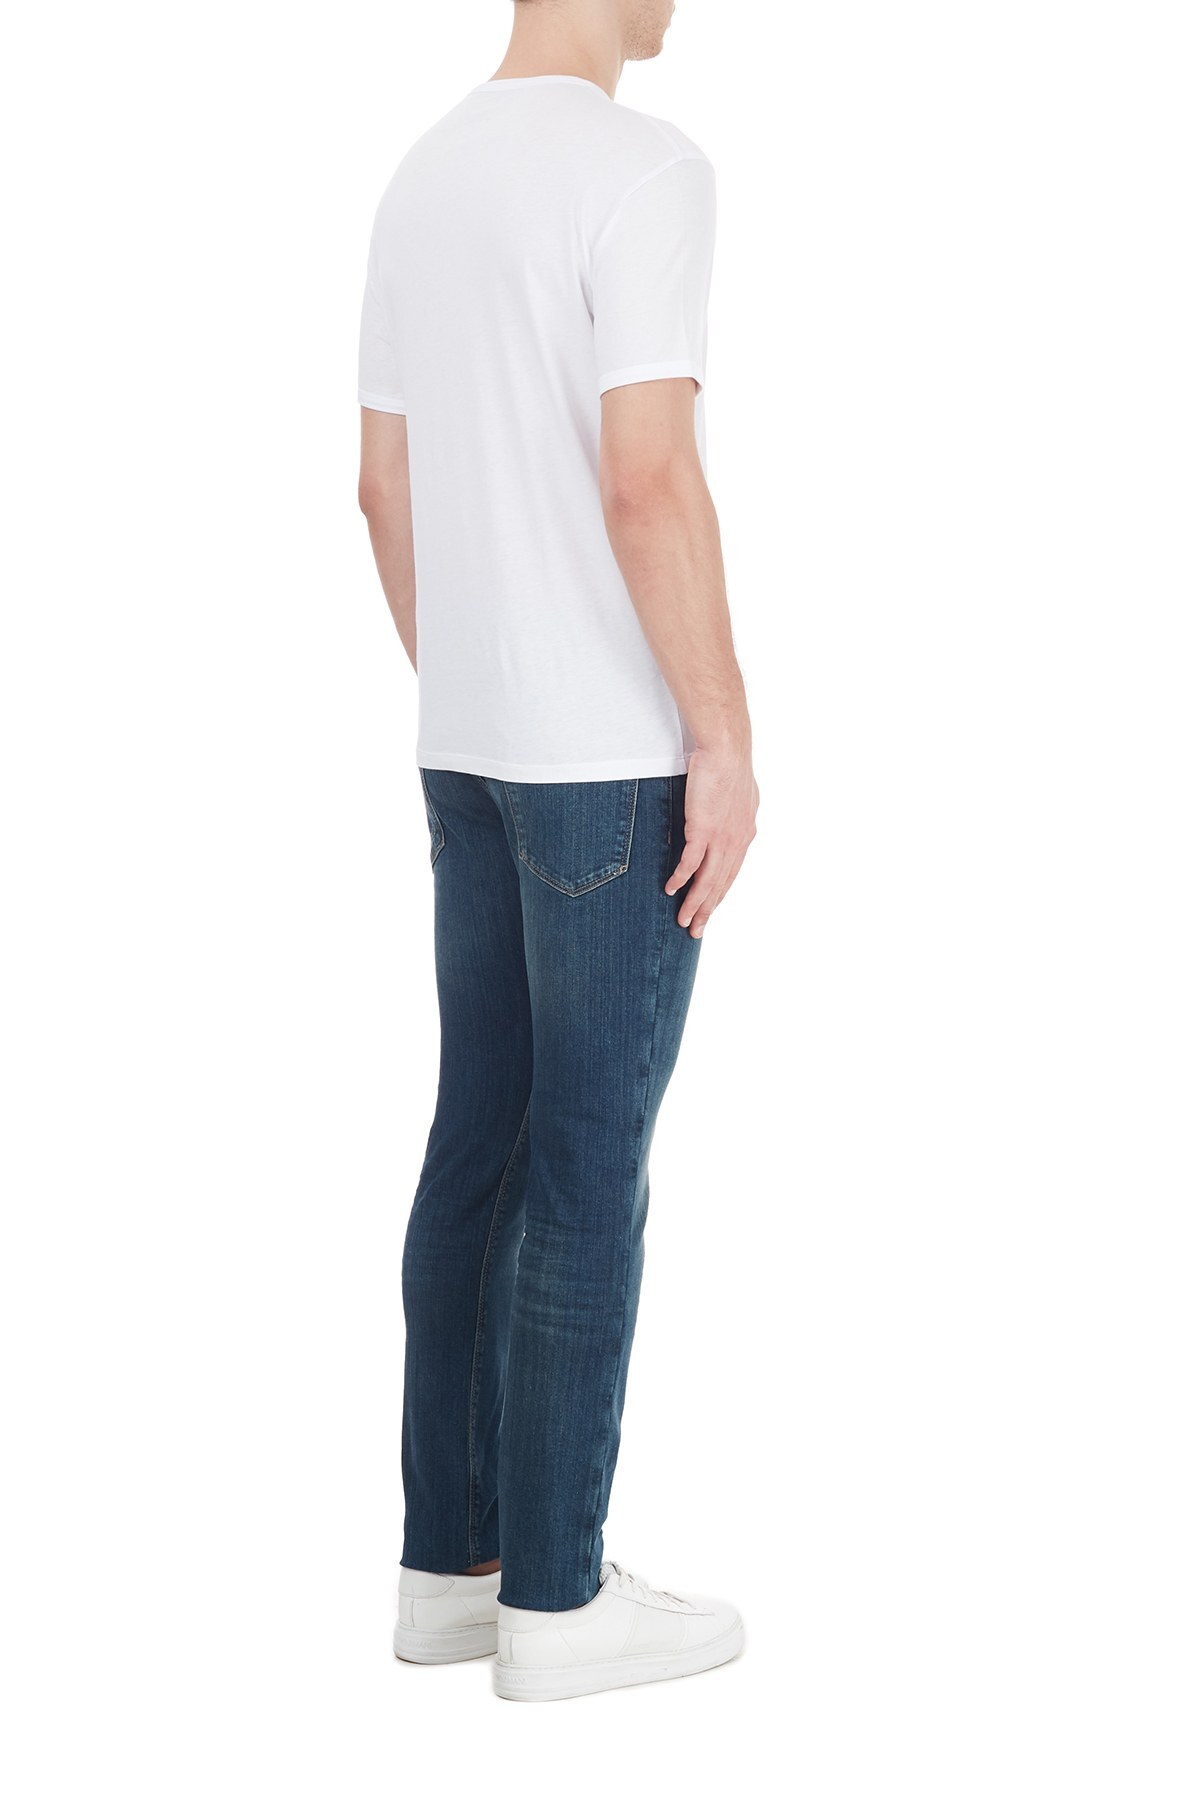 Emporio Armani Slim Fit Pamuklu J06 Jeans Erkek Kot Pantolon 6H1J06 1DR6Z 0942 MAVİ